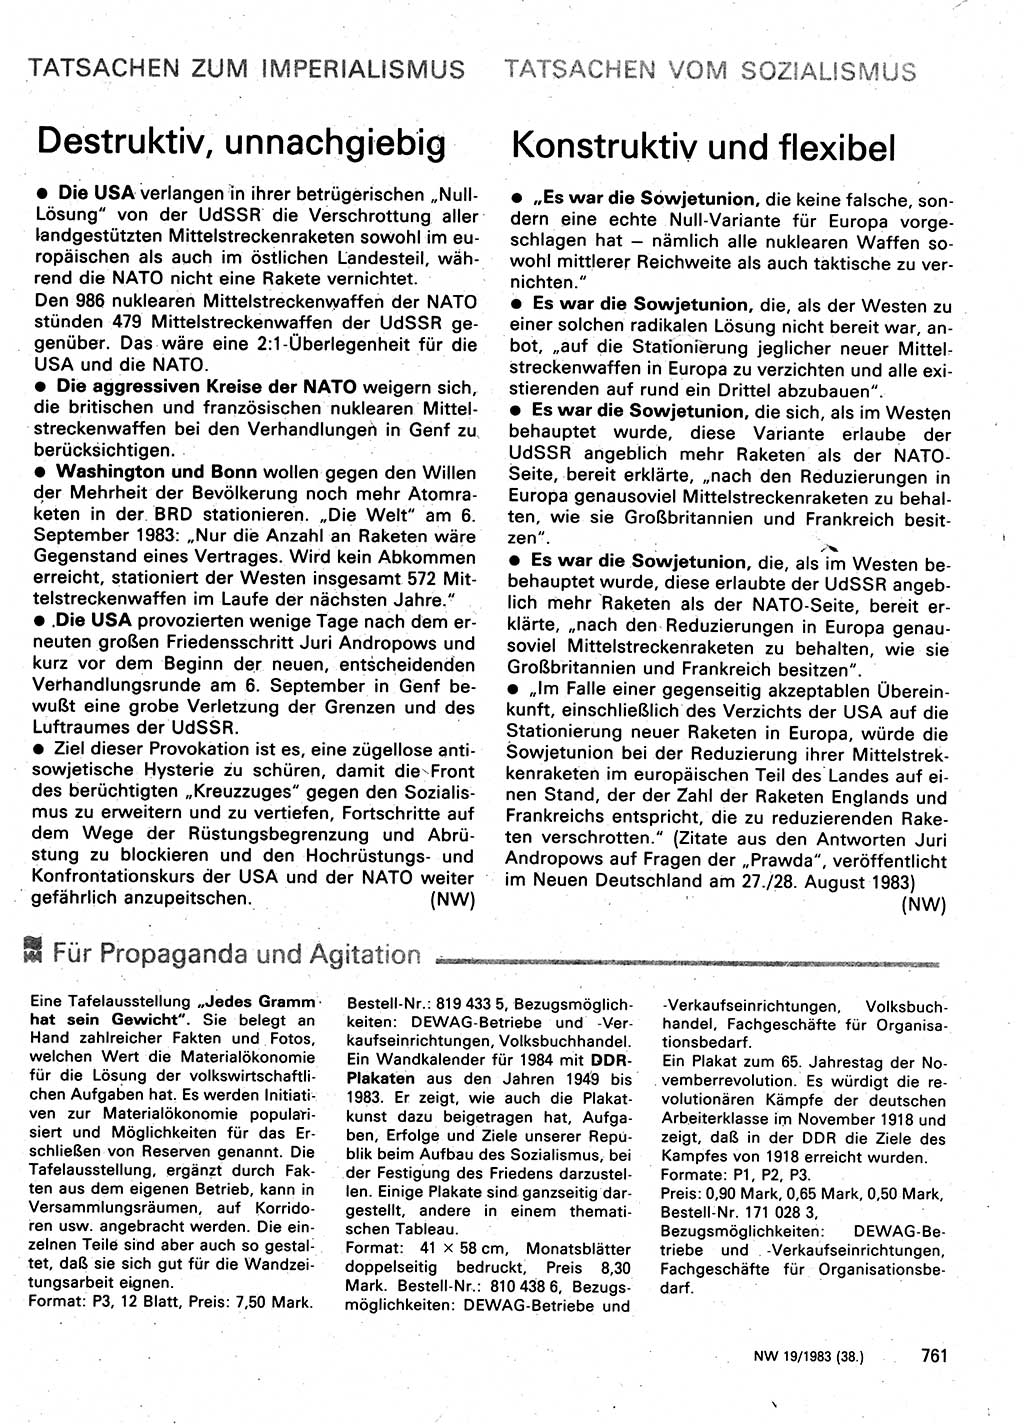 Neuer Weg (NW), Organ des Zentralkomitees (ZK) der SED (Sozialistische Einheitspartei Deutschlands) für Fragen des Parteilebens, 38. Jahrgang [Deutsche Demokratische Republik (DDR)] 1983, Seite 761 (NW ZK SED DDR 1983, S. 761)